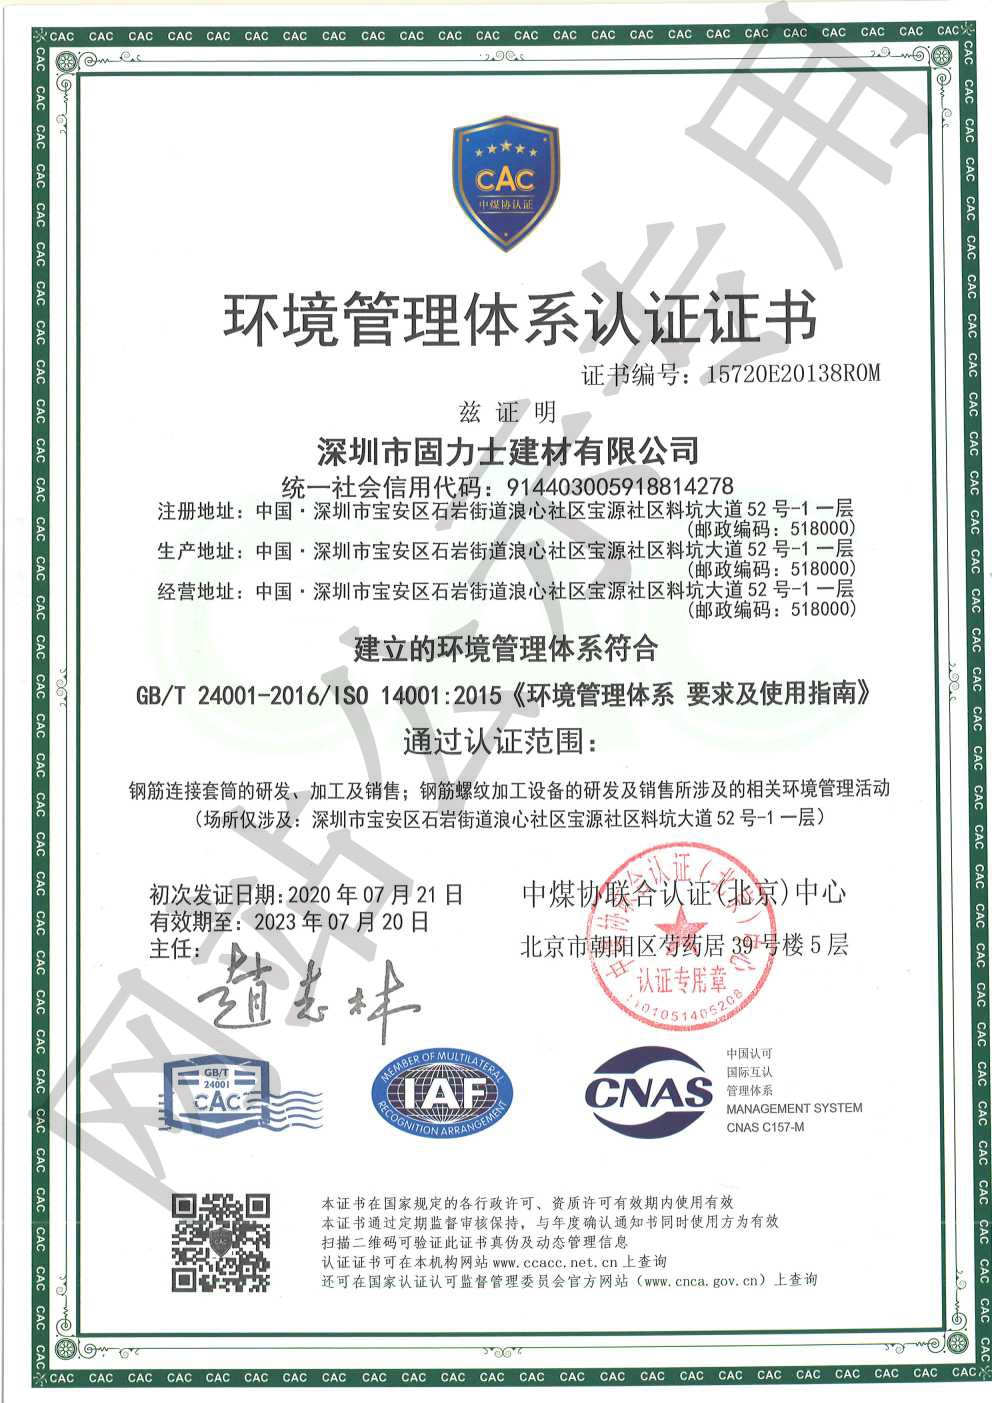 思南ISO14001证书